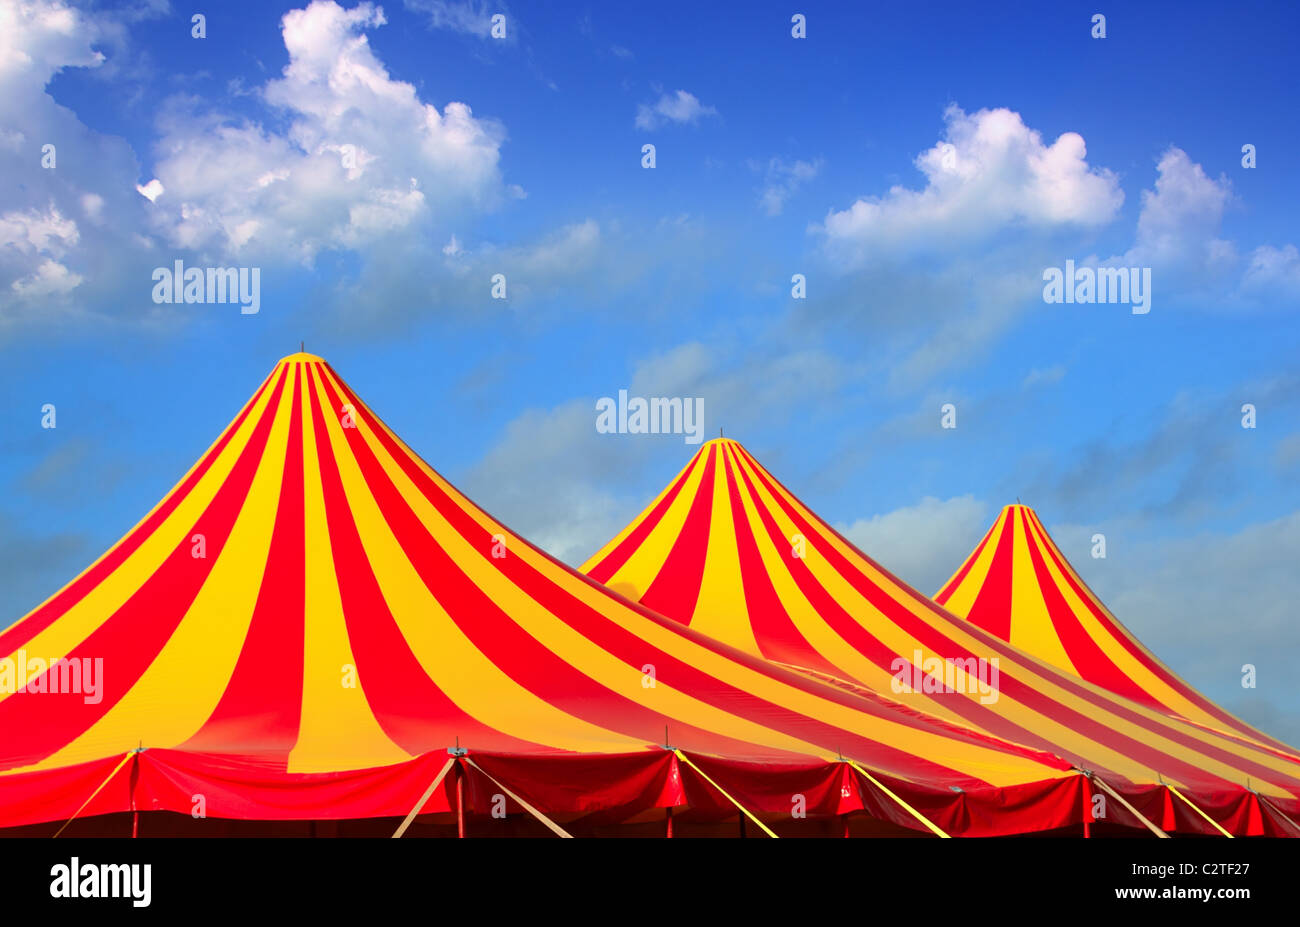 Carpa del circo rojo, naranja y amarillo patrón pelado blue sky Foto de stock